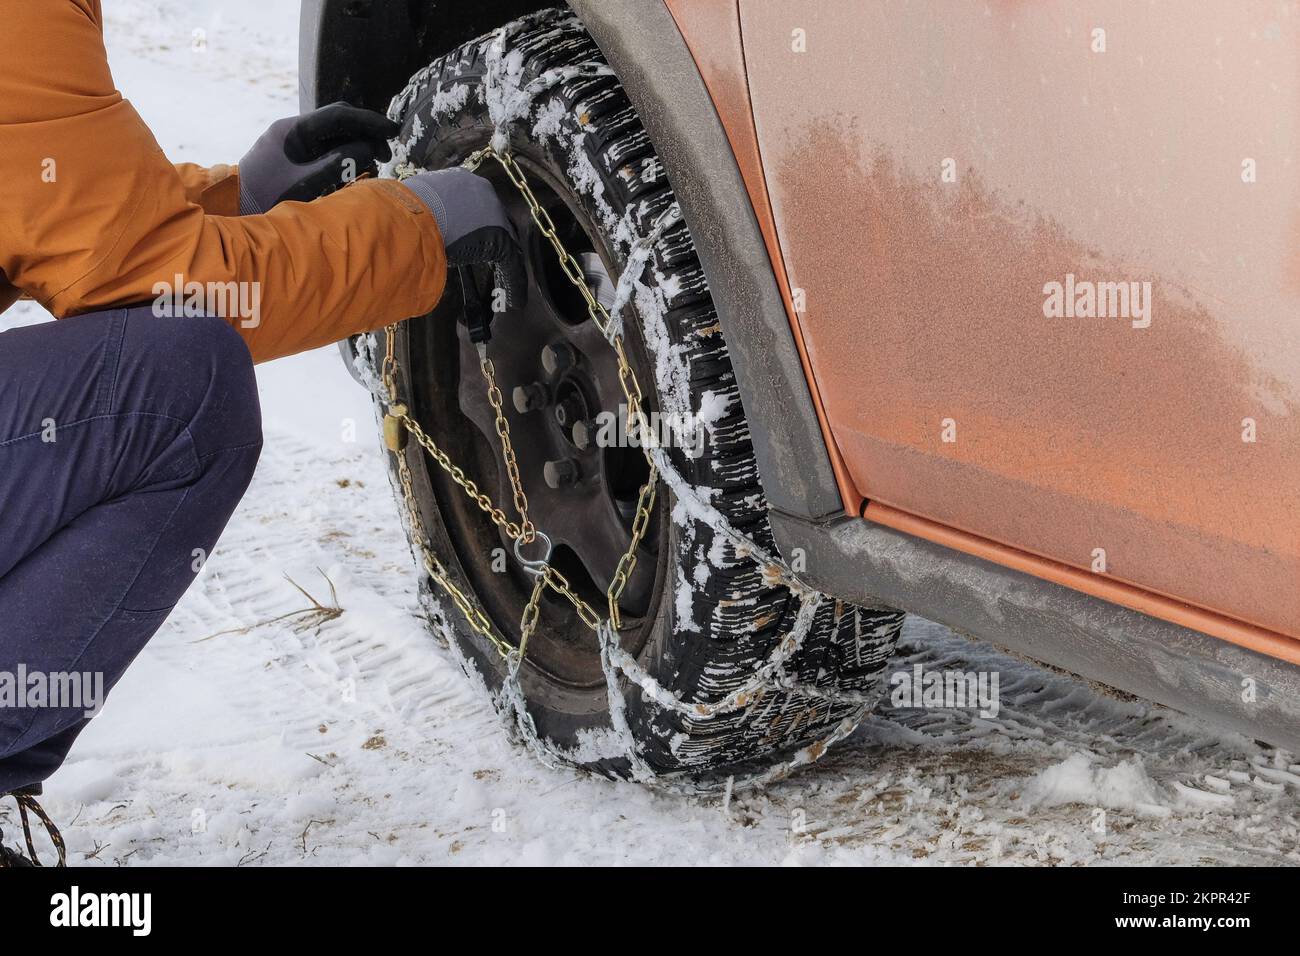 Der Fahrer installiert im Winter Ketten am Rad seines Autos. Fahrzeugausrüstung für Geländeeinsatz und schlechtes Wetter. Stockfoto